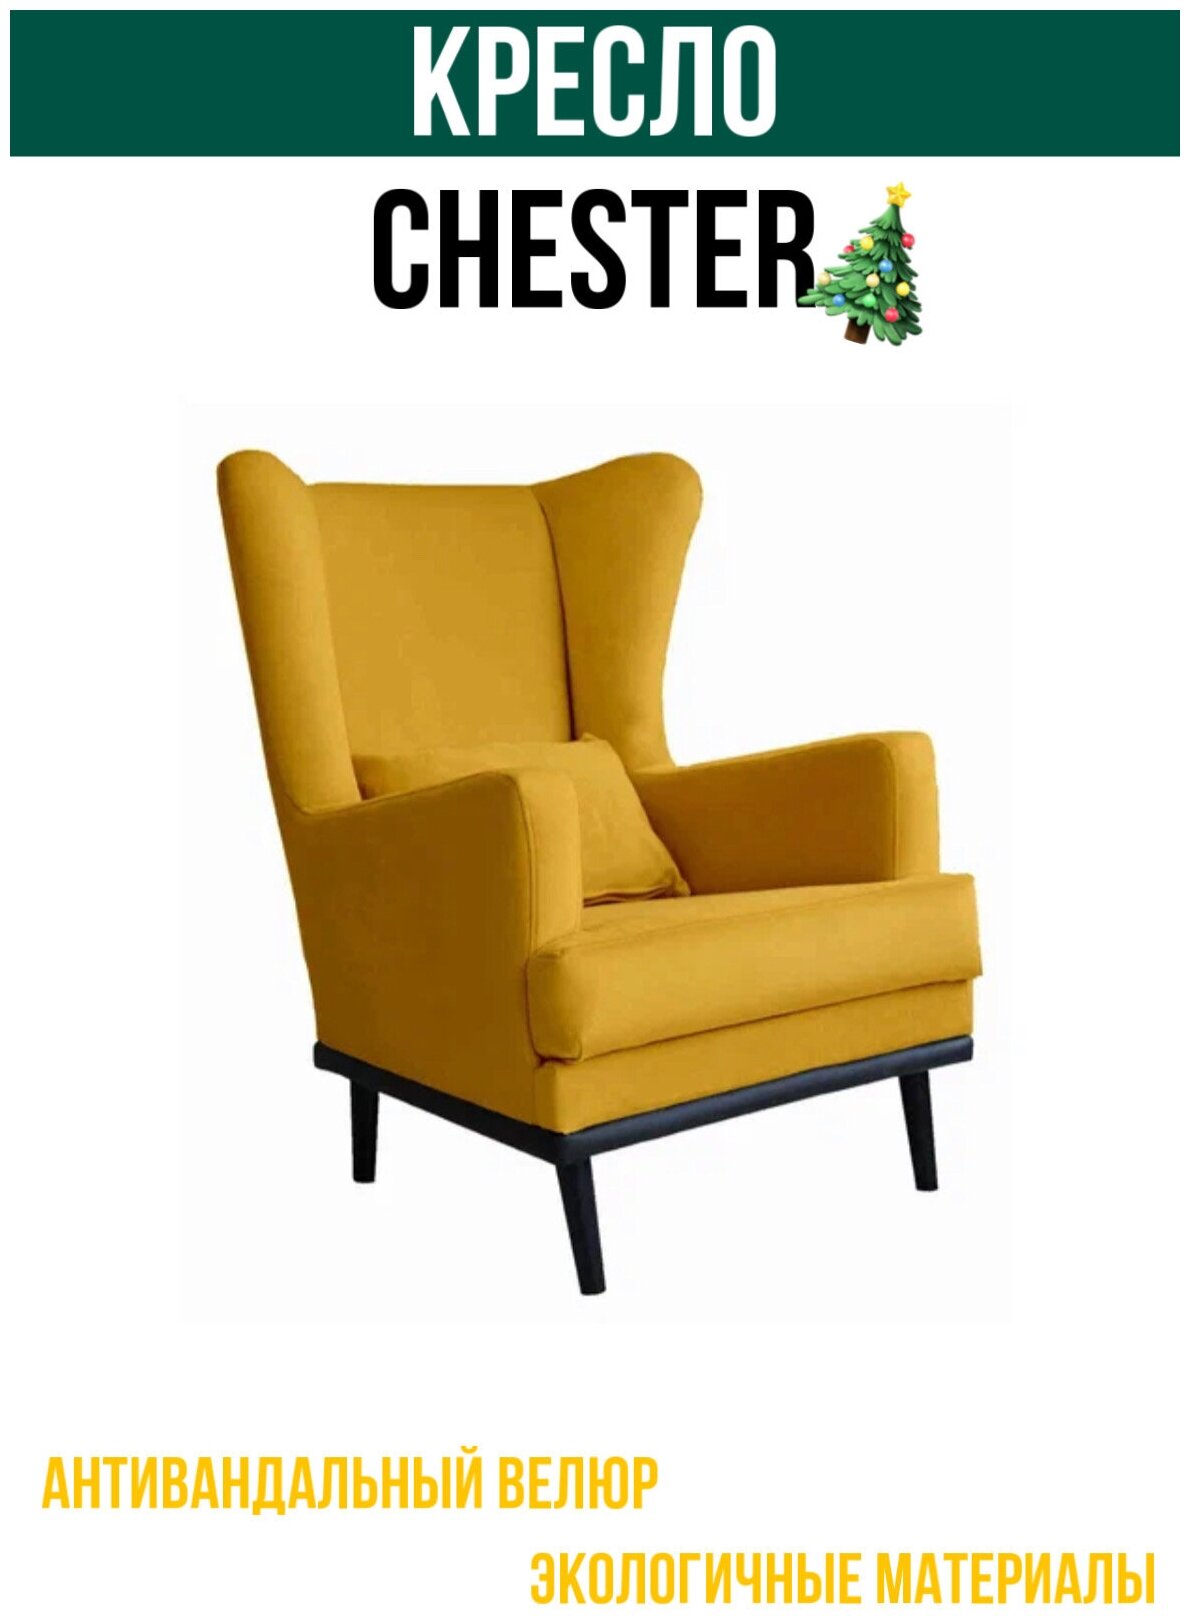 Кресло CHESTER мягкое для спальни / детской / прихожей / гостинной.